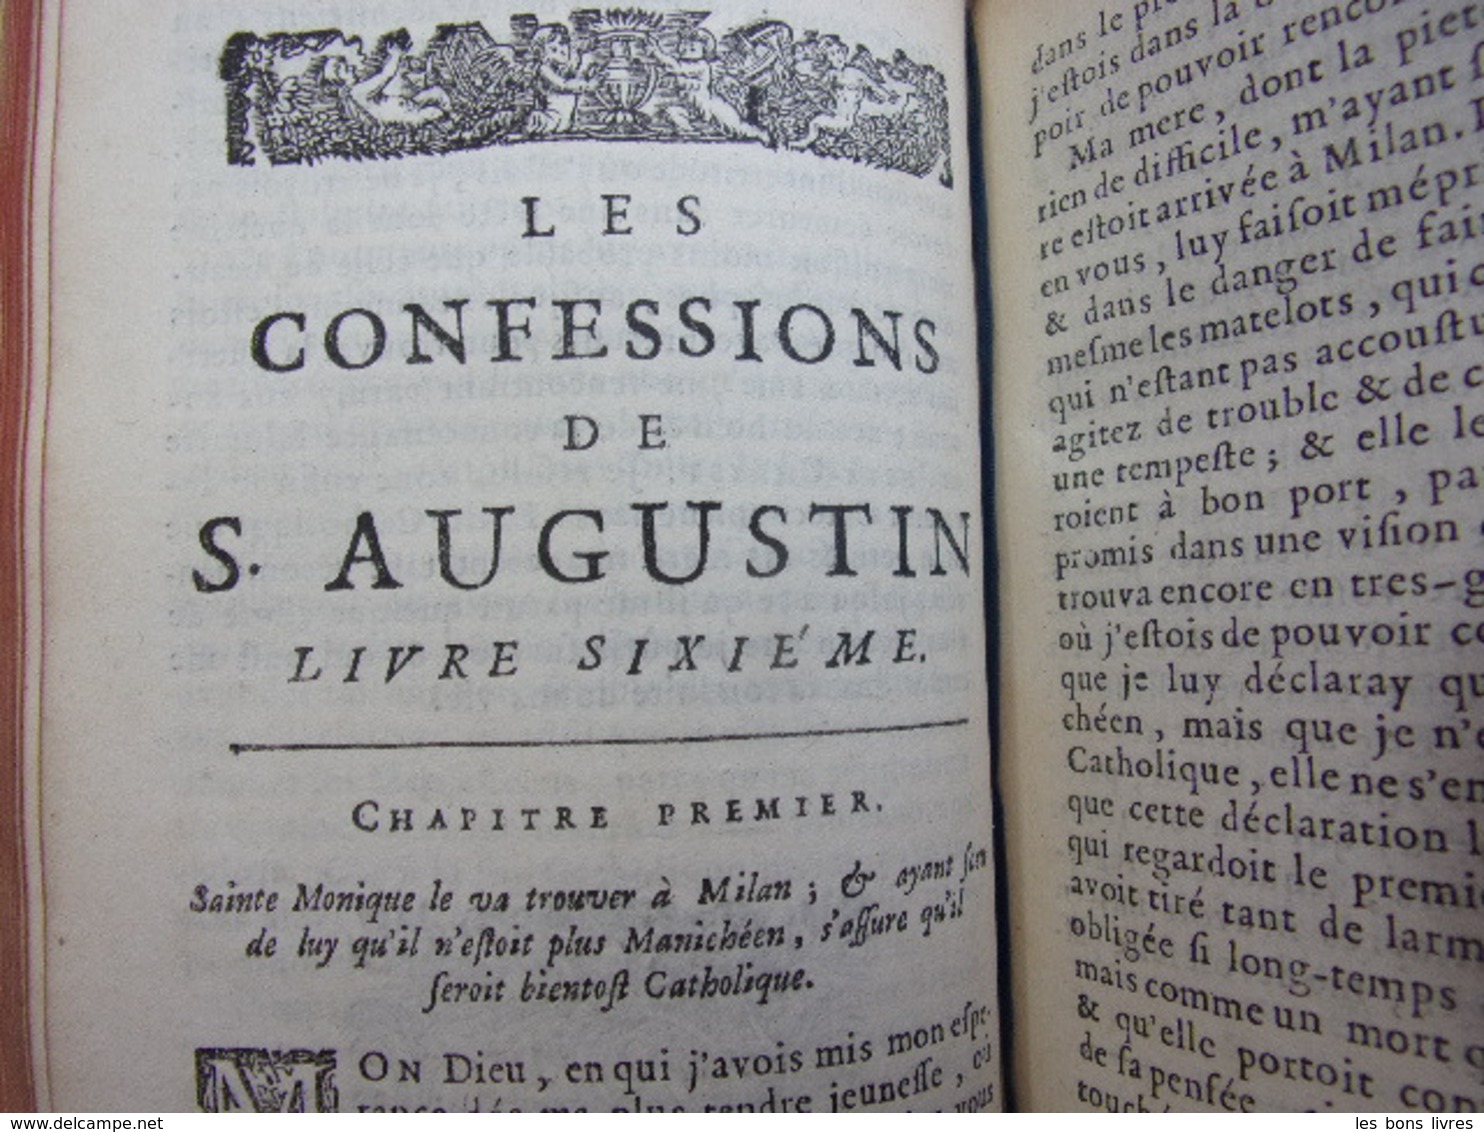 1683. Les confessions de Saint Augustin Traduites en Français